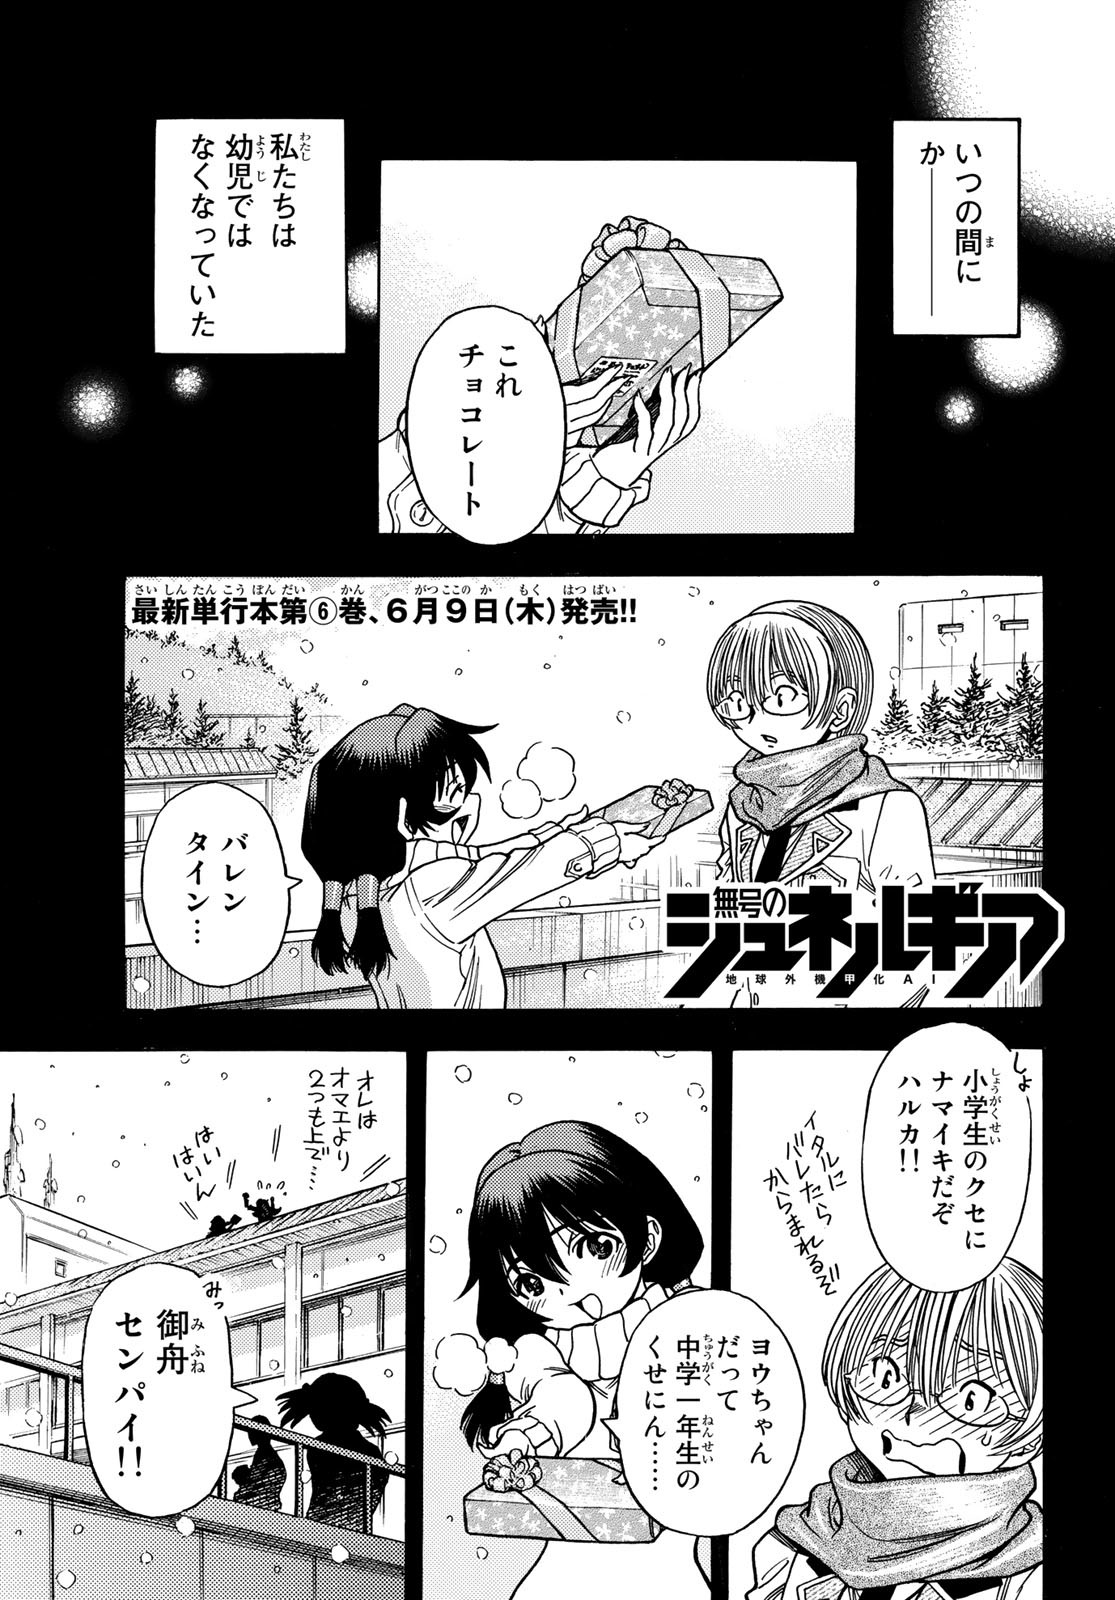 Mugou no Schnell Gear: Chikyuugai Kisouka AI - Chapter 37 - Page 1